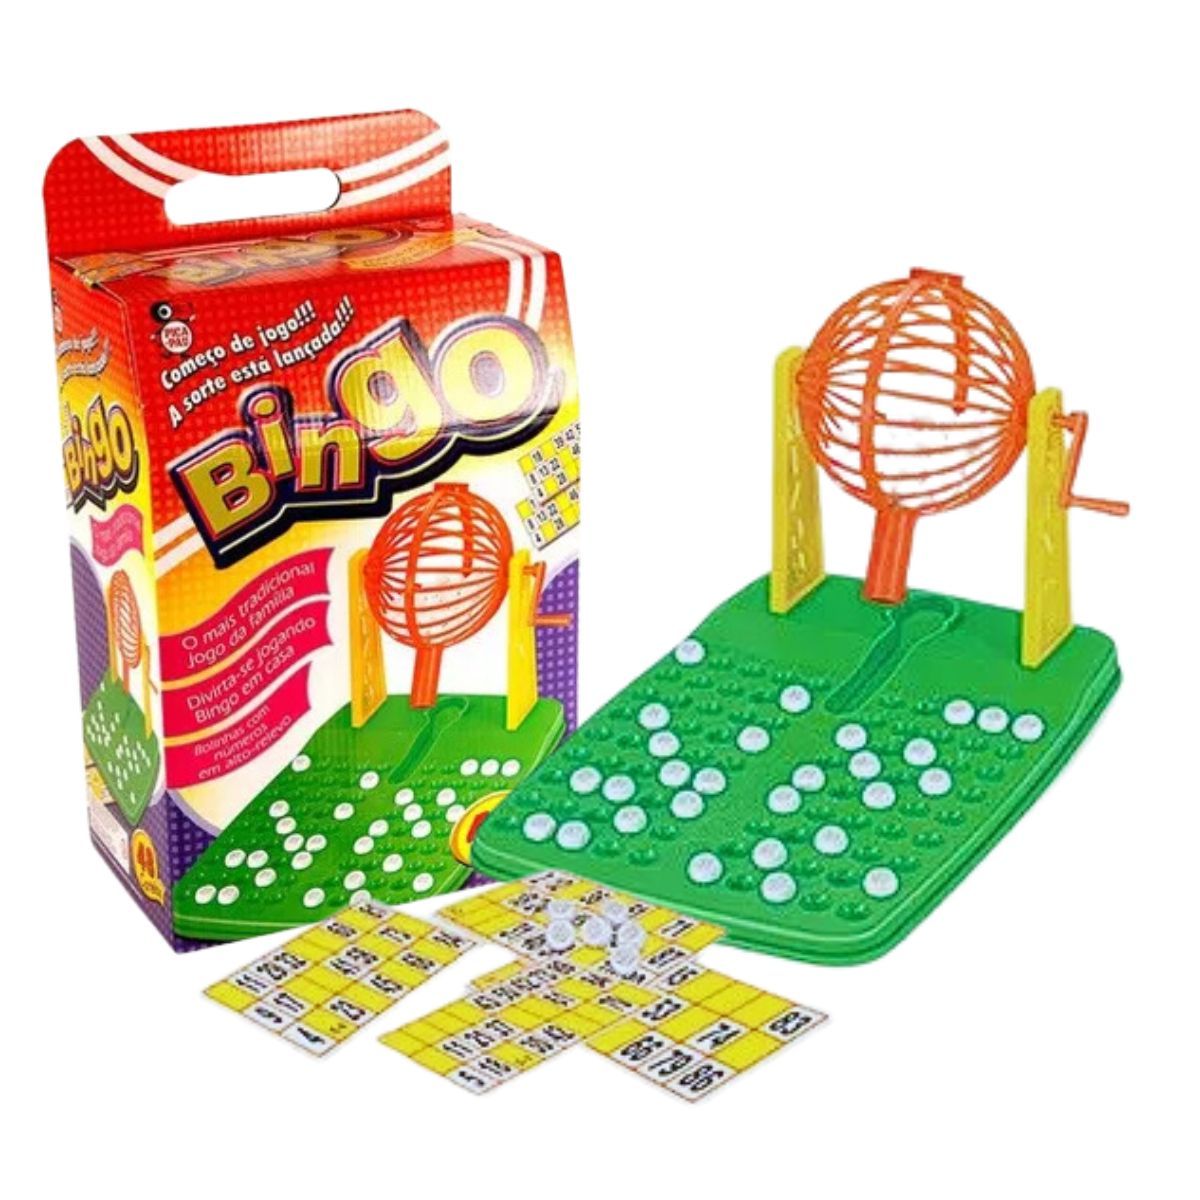 Bingo De Madeira Brinquedo Infantil Para Família 48 Cartelas - Shop Macrozao